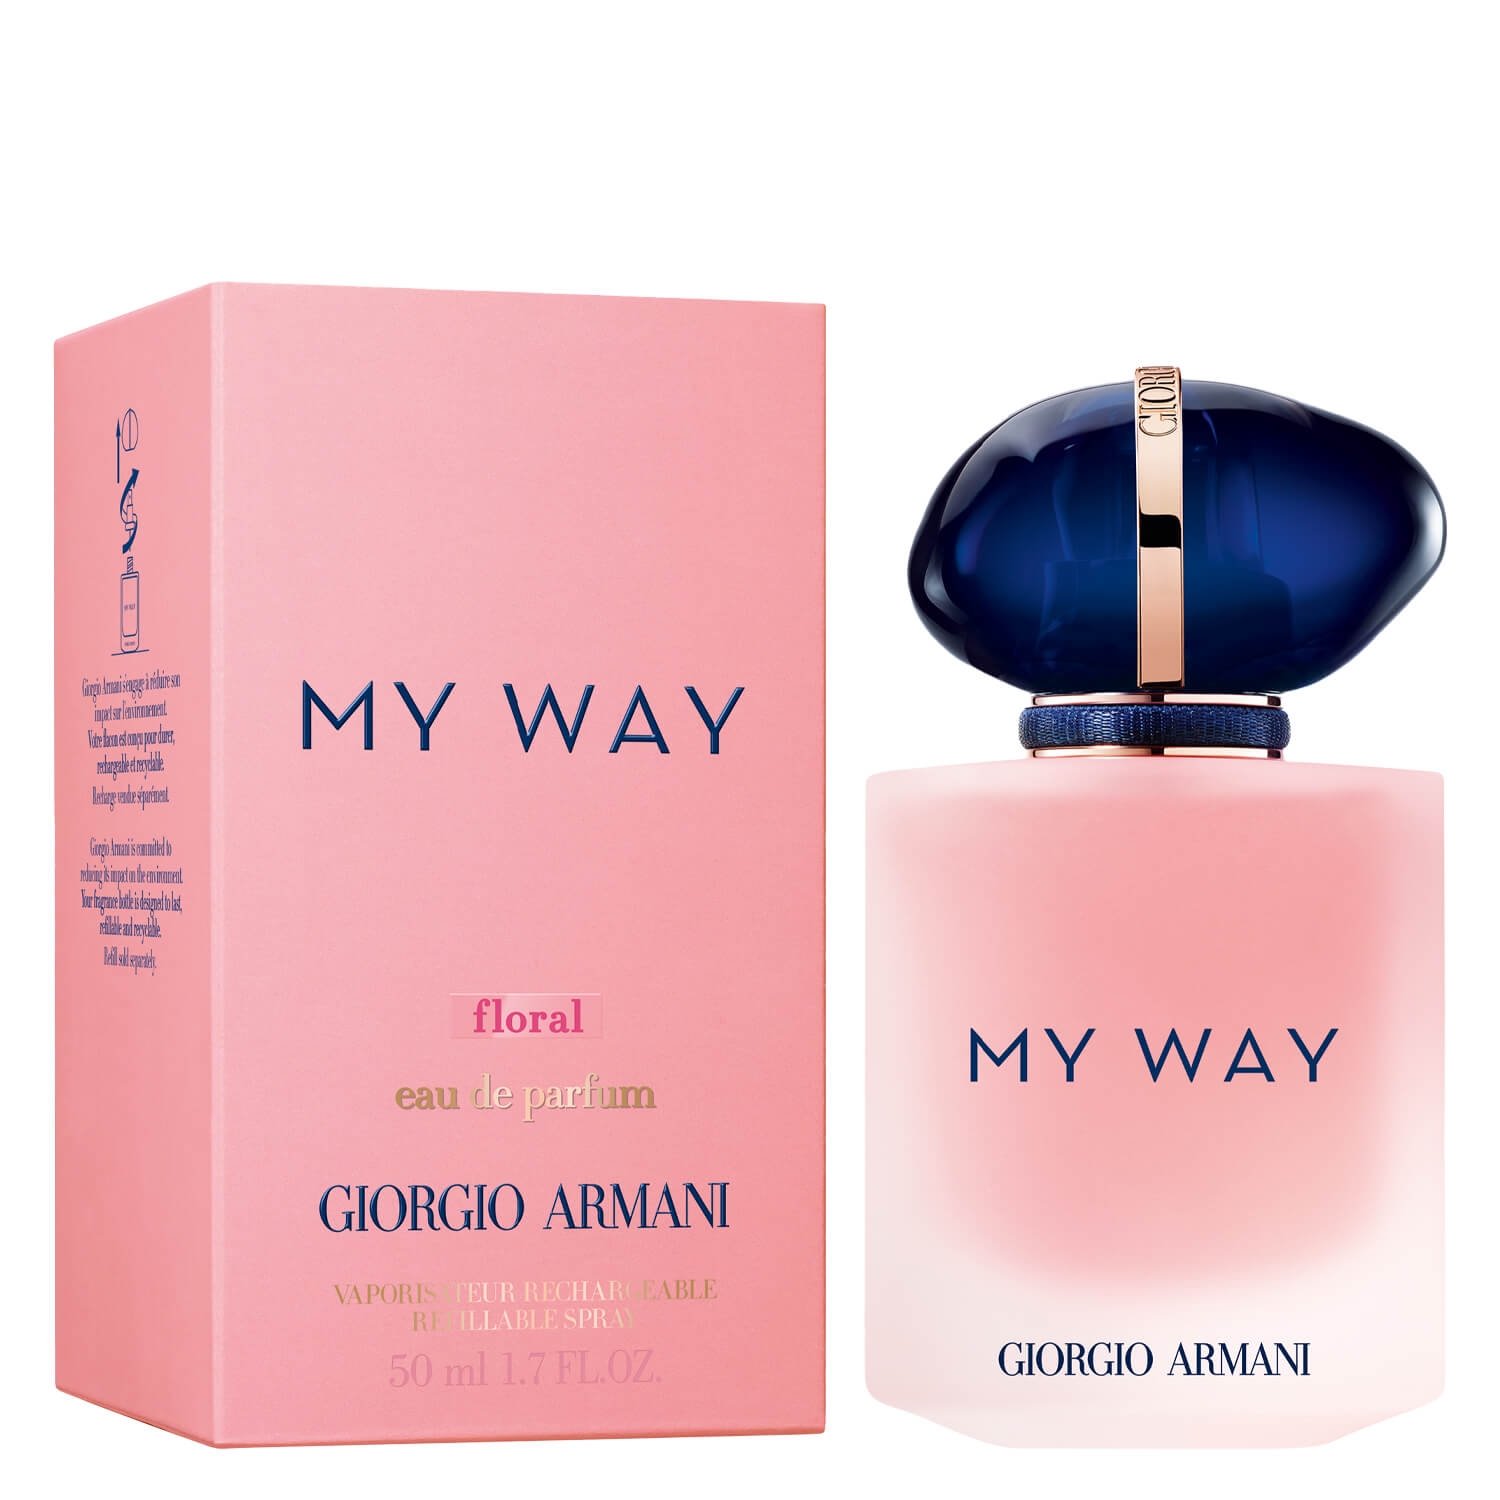 Product image from MY WAY - Floral Eau de Parfum